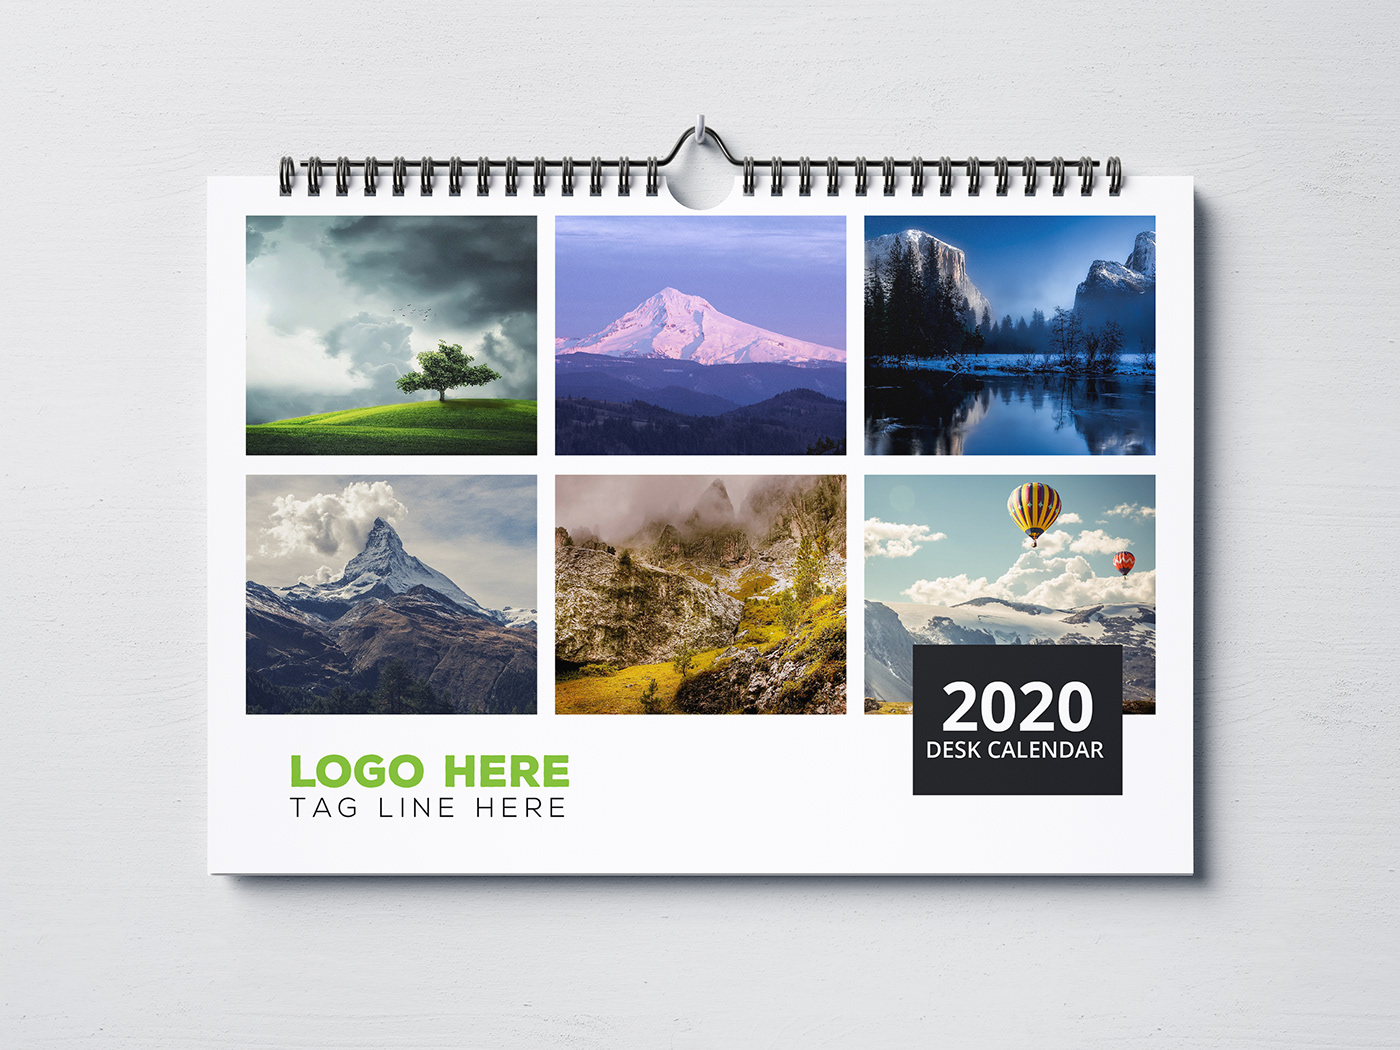 Desk Calendar 2020 template cretive design half WALL CALENDAR calendar template 2020 new Mordern